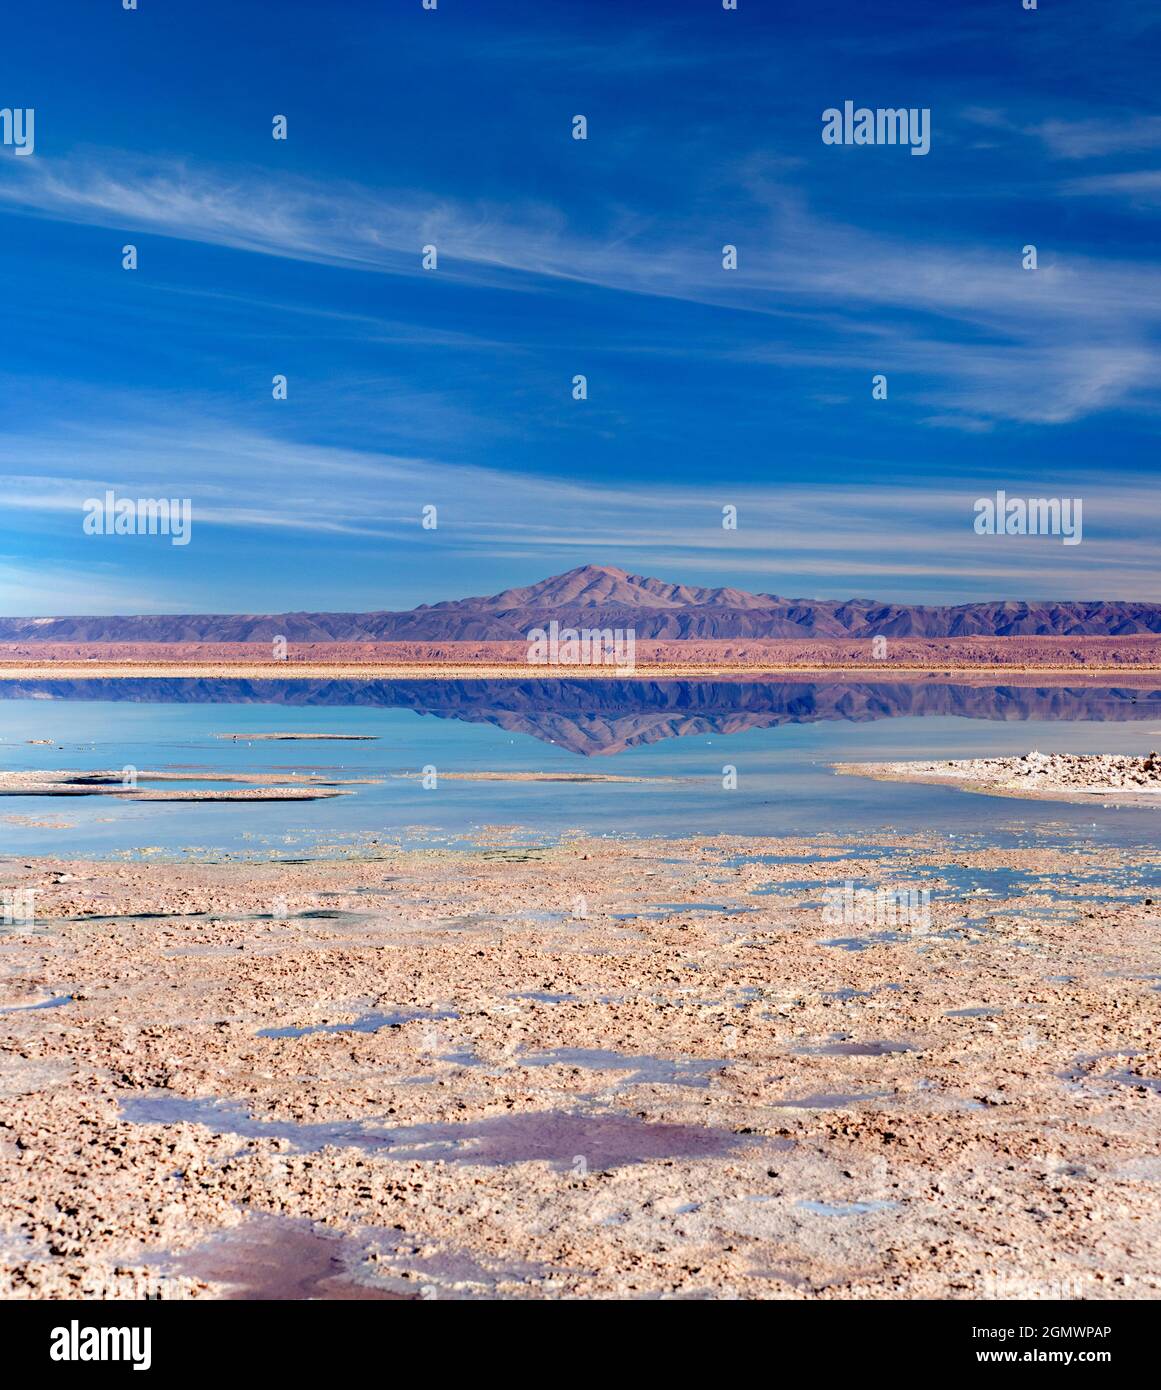 Salar de Atacama, Chile - 27 de mayo de 2018; Salar de Atacama, el salar más grande de Chile, cubre más de 3.000 kilómetros cuadrados, convirtiéndolos en uno de los Foto de stock